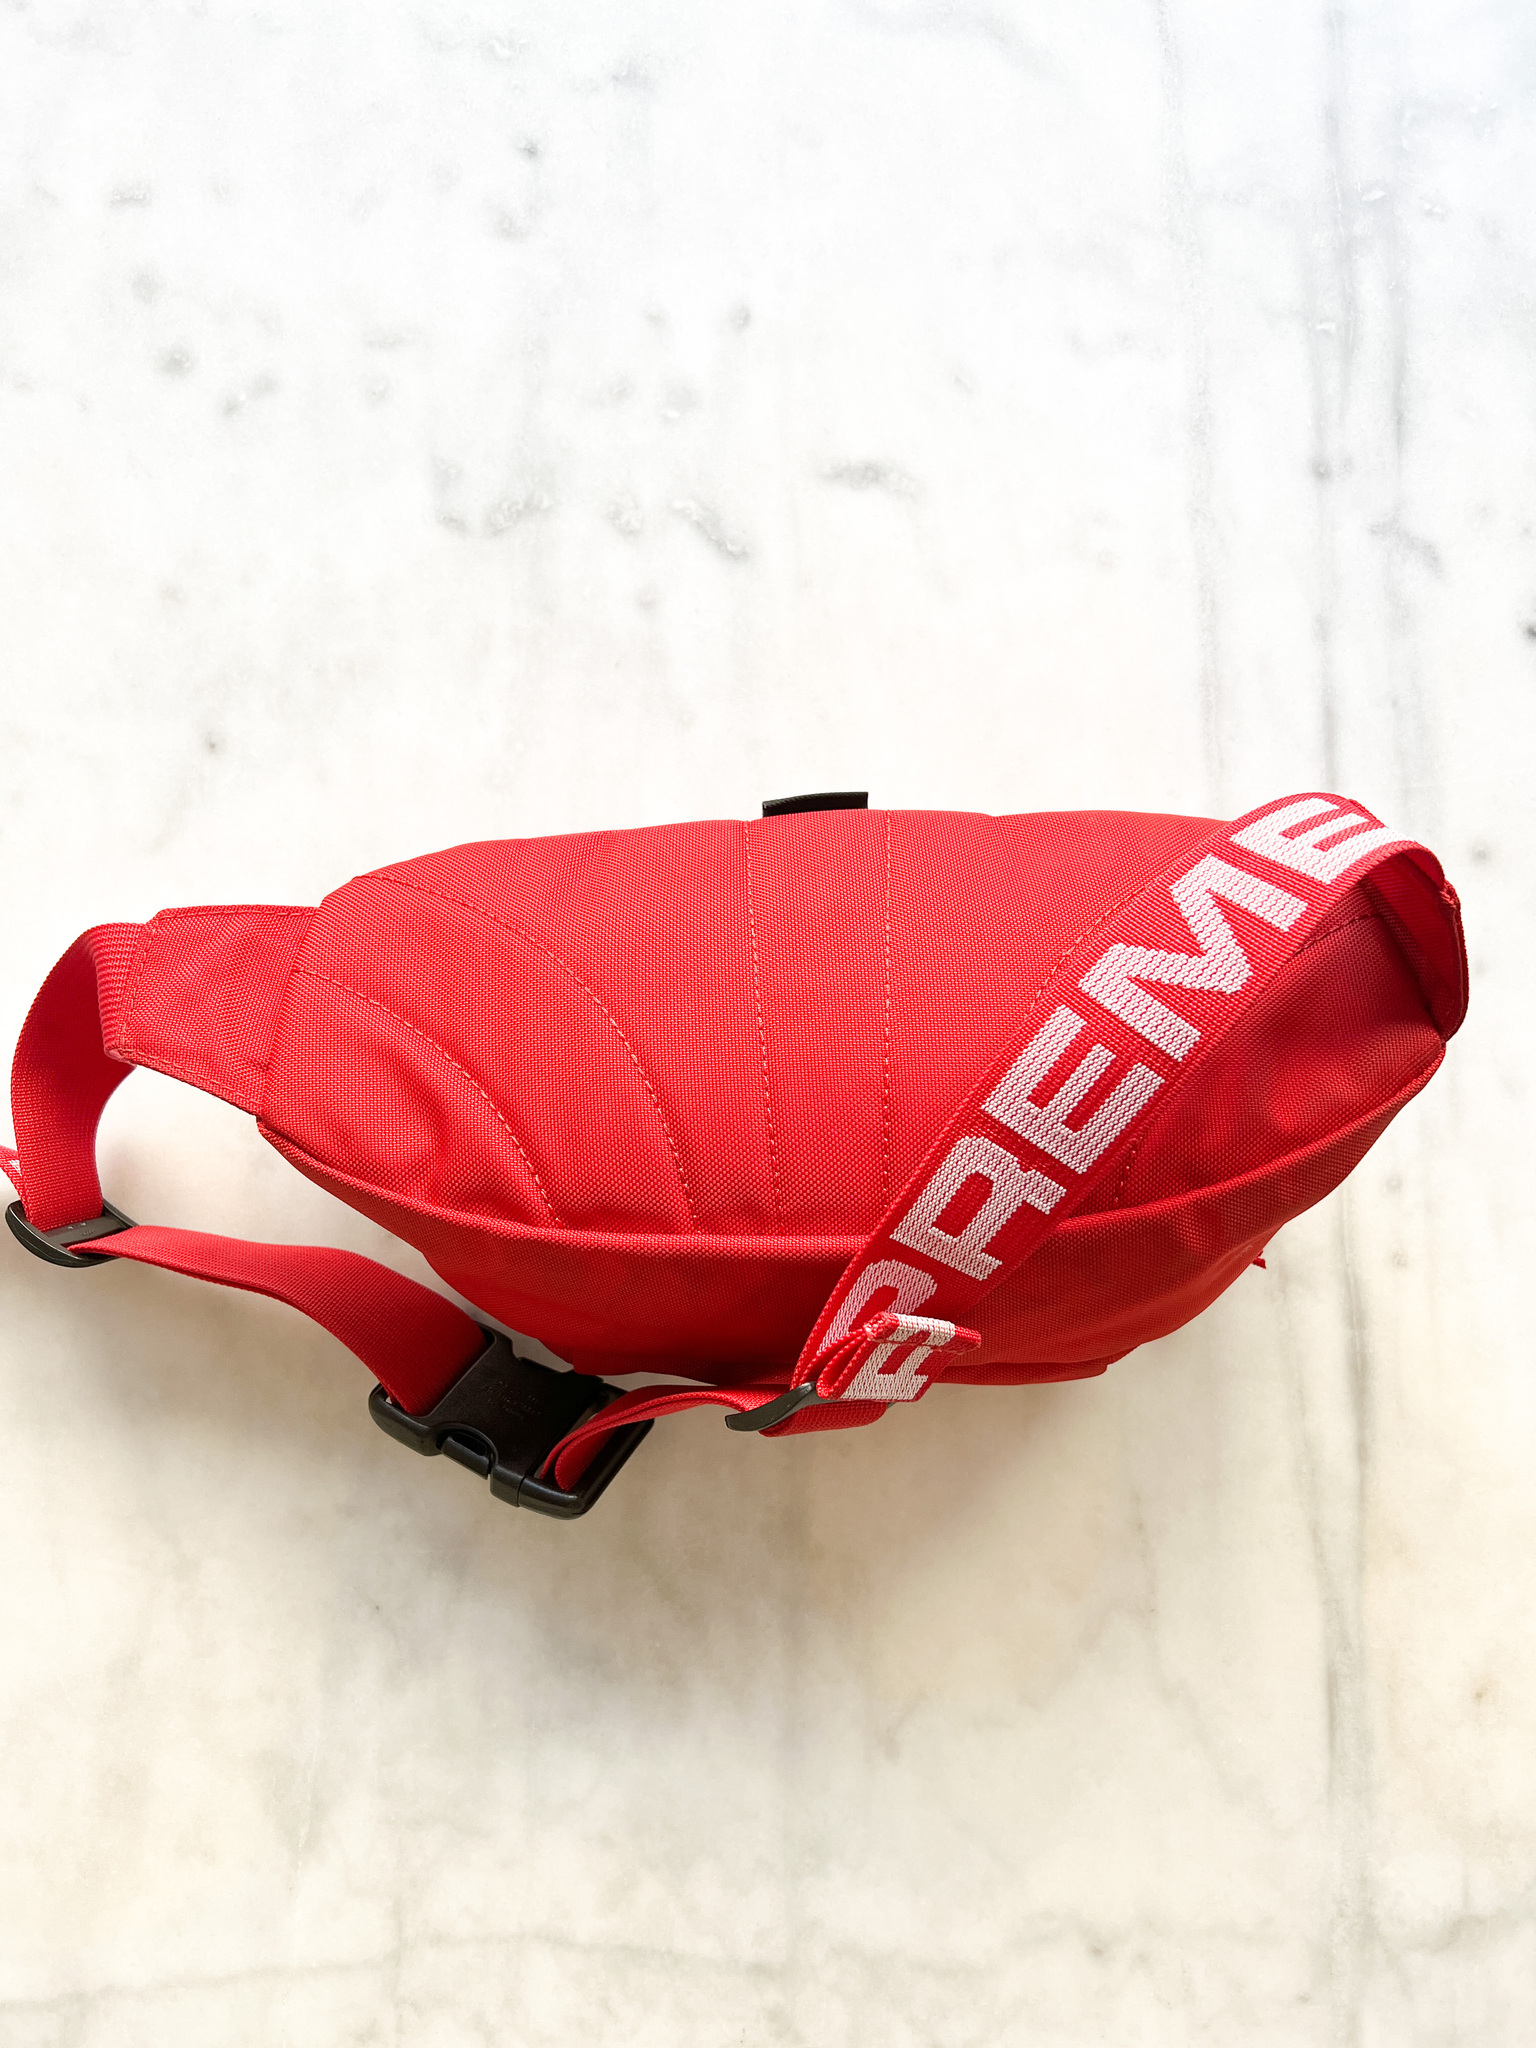 SUPREME Waist Bag (SS18) Red